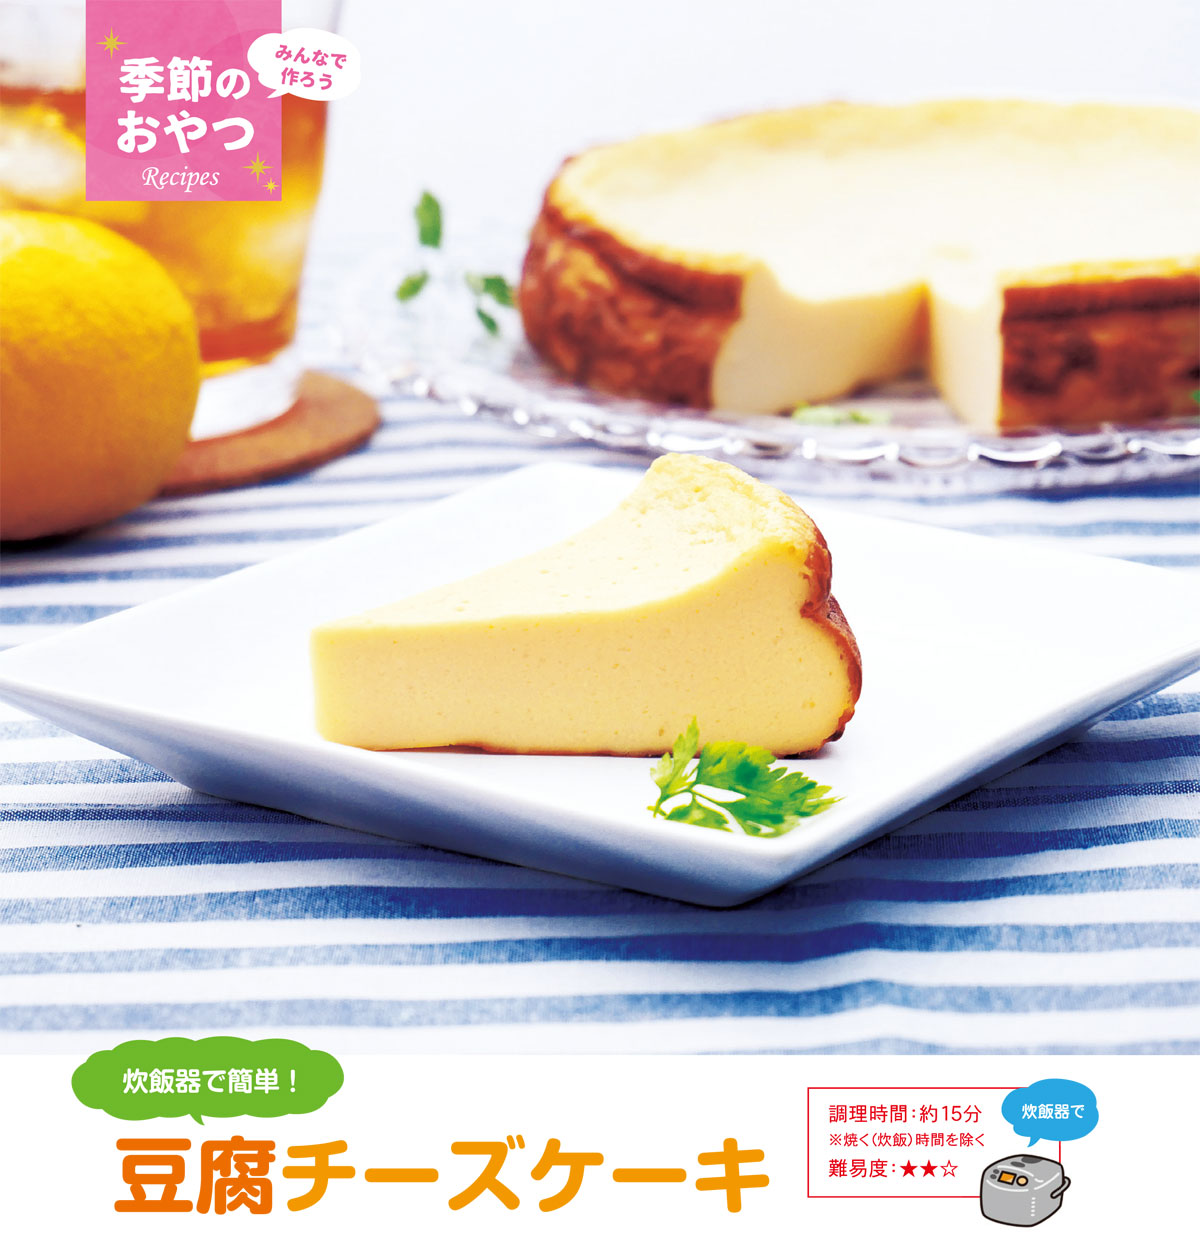 豆腐 チーズ ケーキ